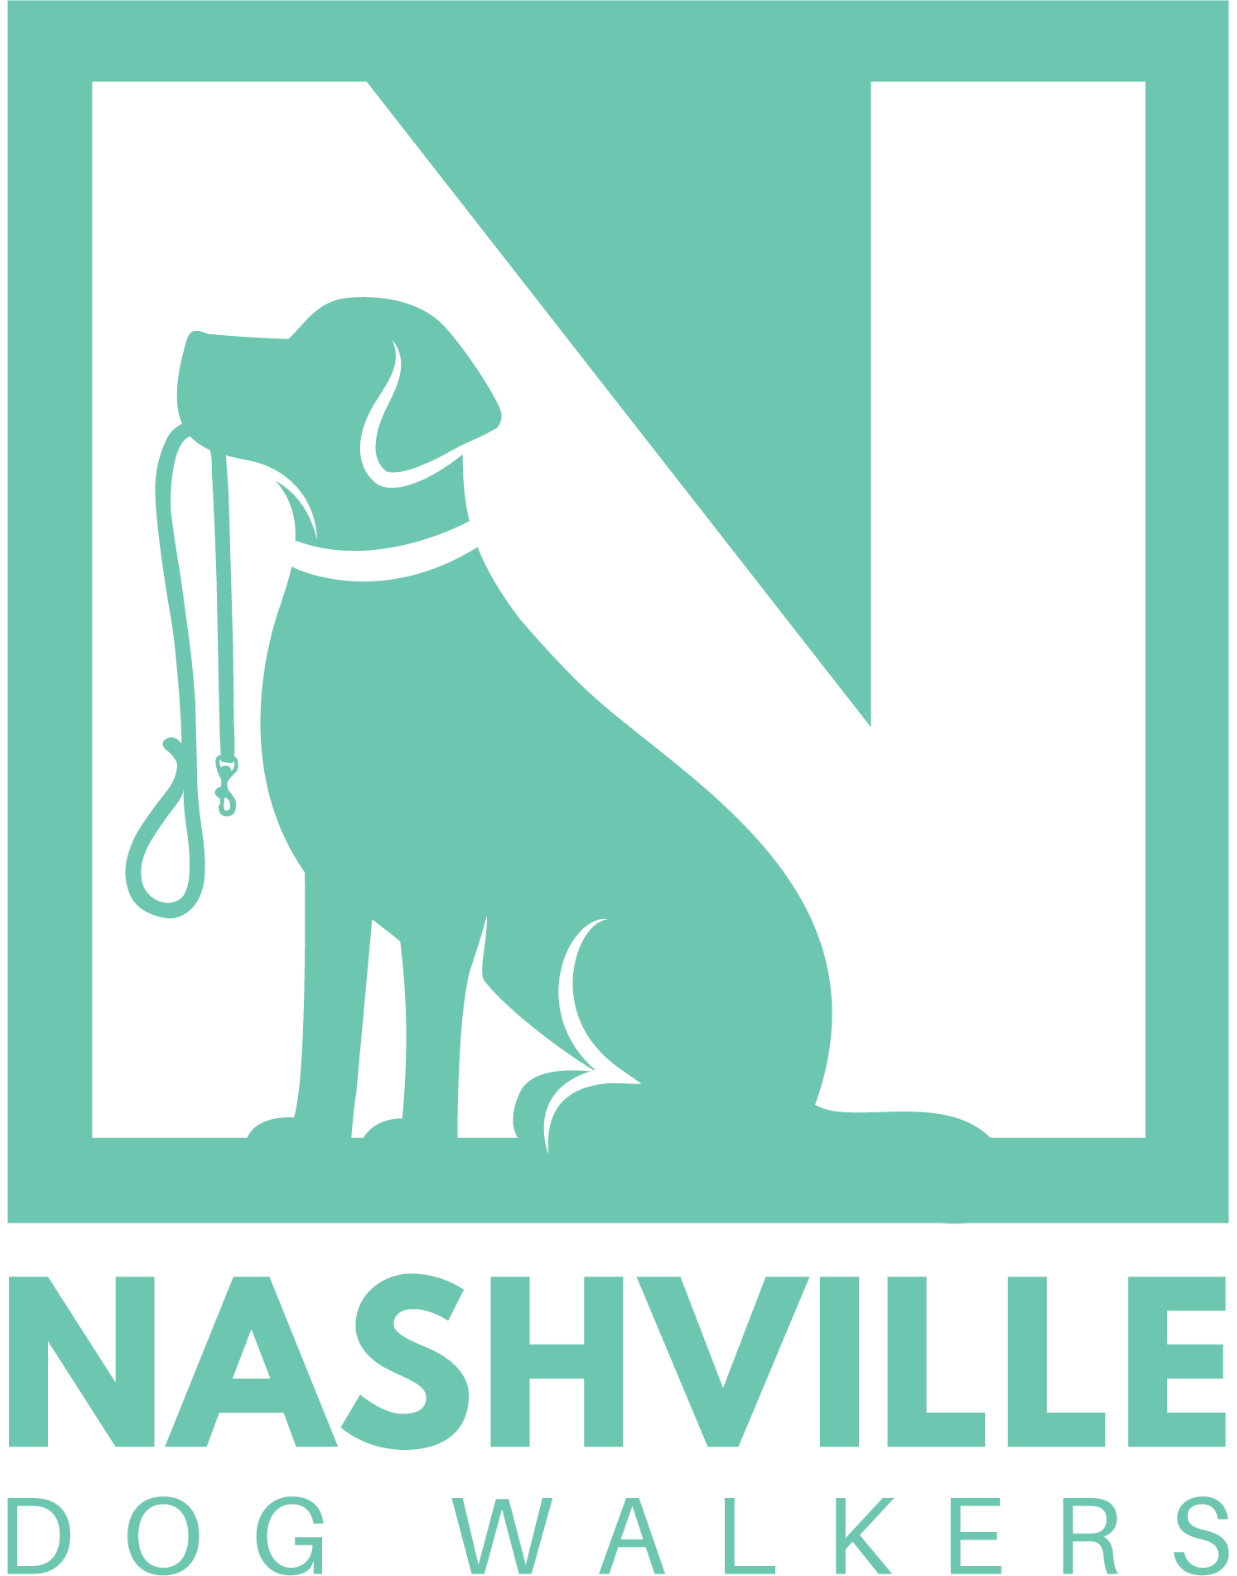  Nashville Dog Walkers - Nashville, TN  https://www.nashvilledogwalkers.com/ 